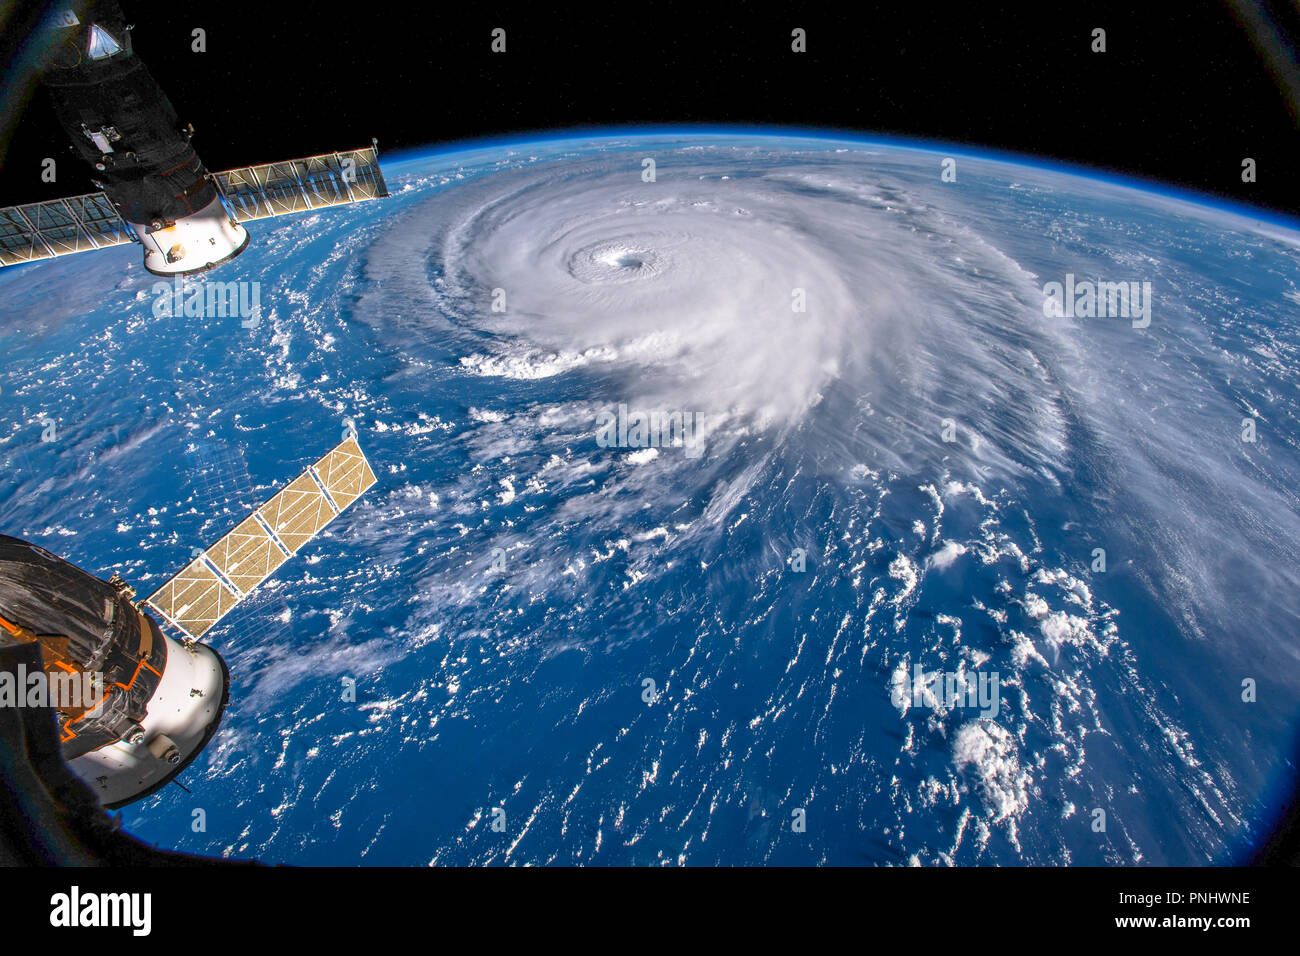 L'uragano Florence visto dallo spazio dalla ISS ( Stazione Spaziale Internazionale). Questa immagine è una dispensa della NASA. Foto Stock